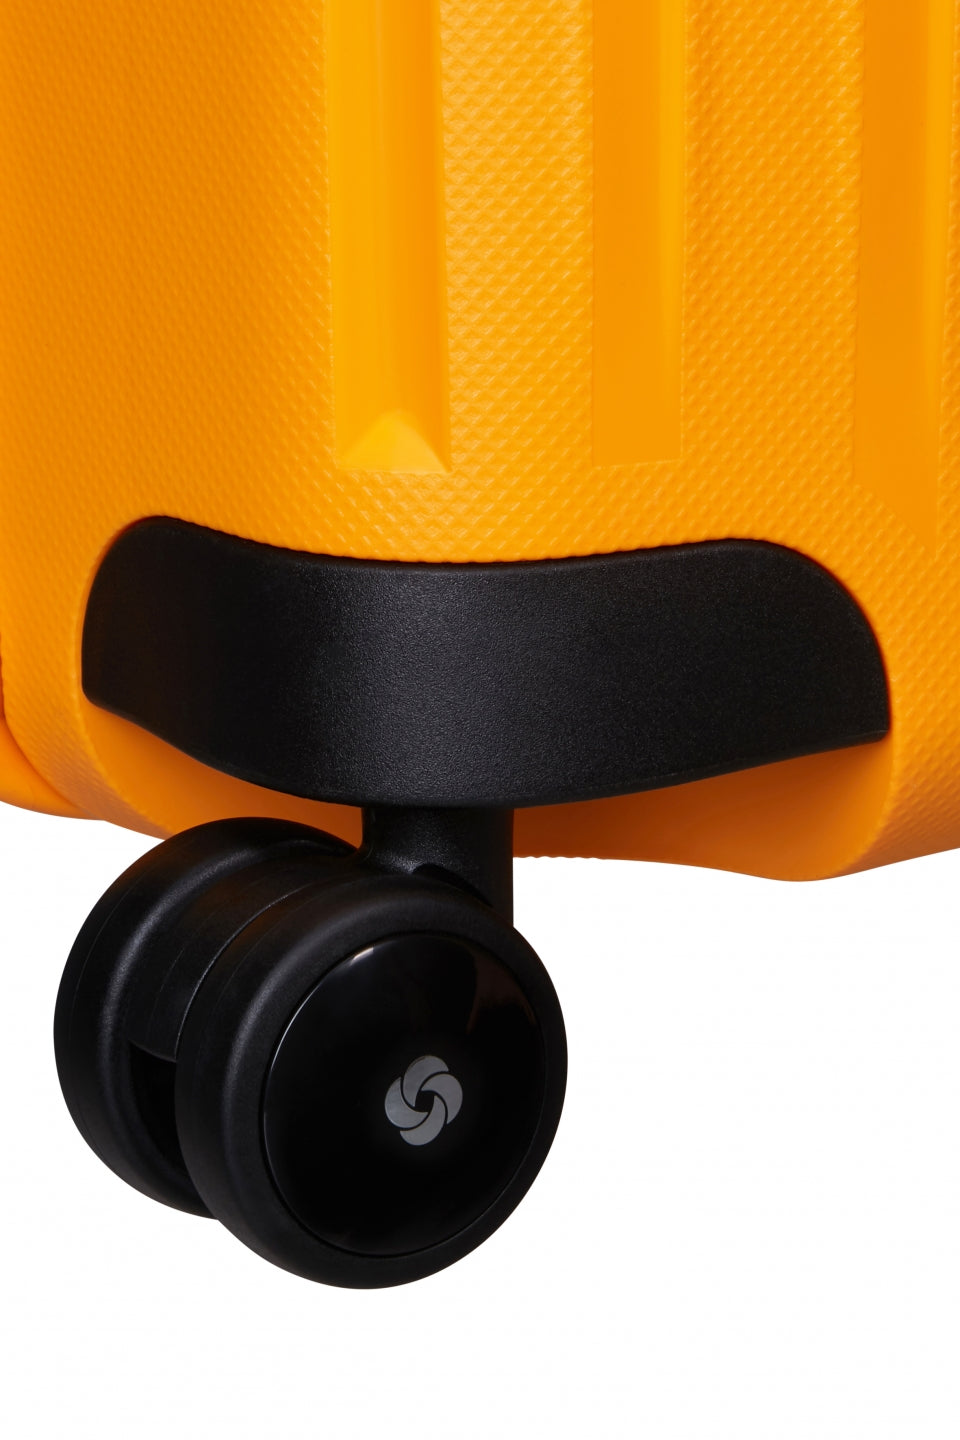 Samsonite S`Cure Hard Mellomstor Koffert Med 4 Hjul 69 cm Honey Yellow